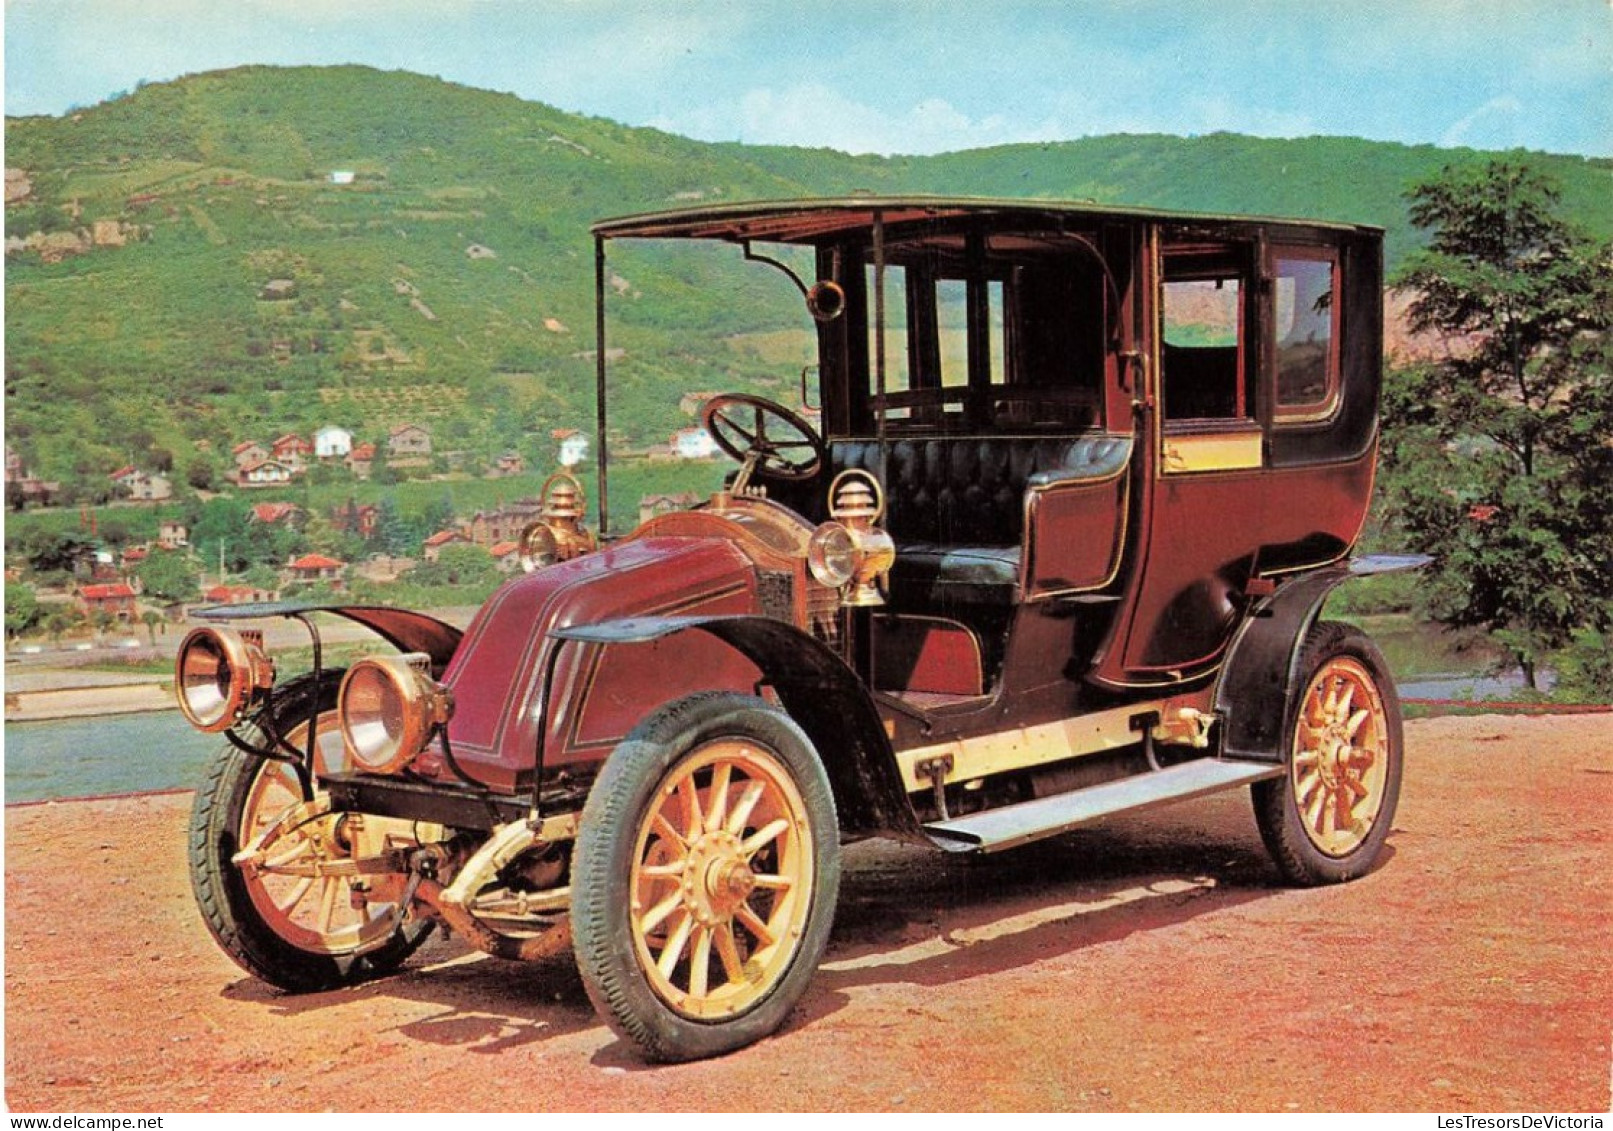 TRANSPORT - Musée De L'automobile - Renault 1908 - Taxi De La Marne - Carte Postale - Taxi & Fiacre